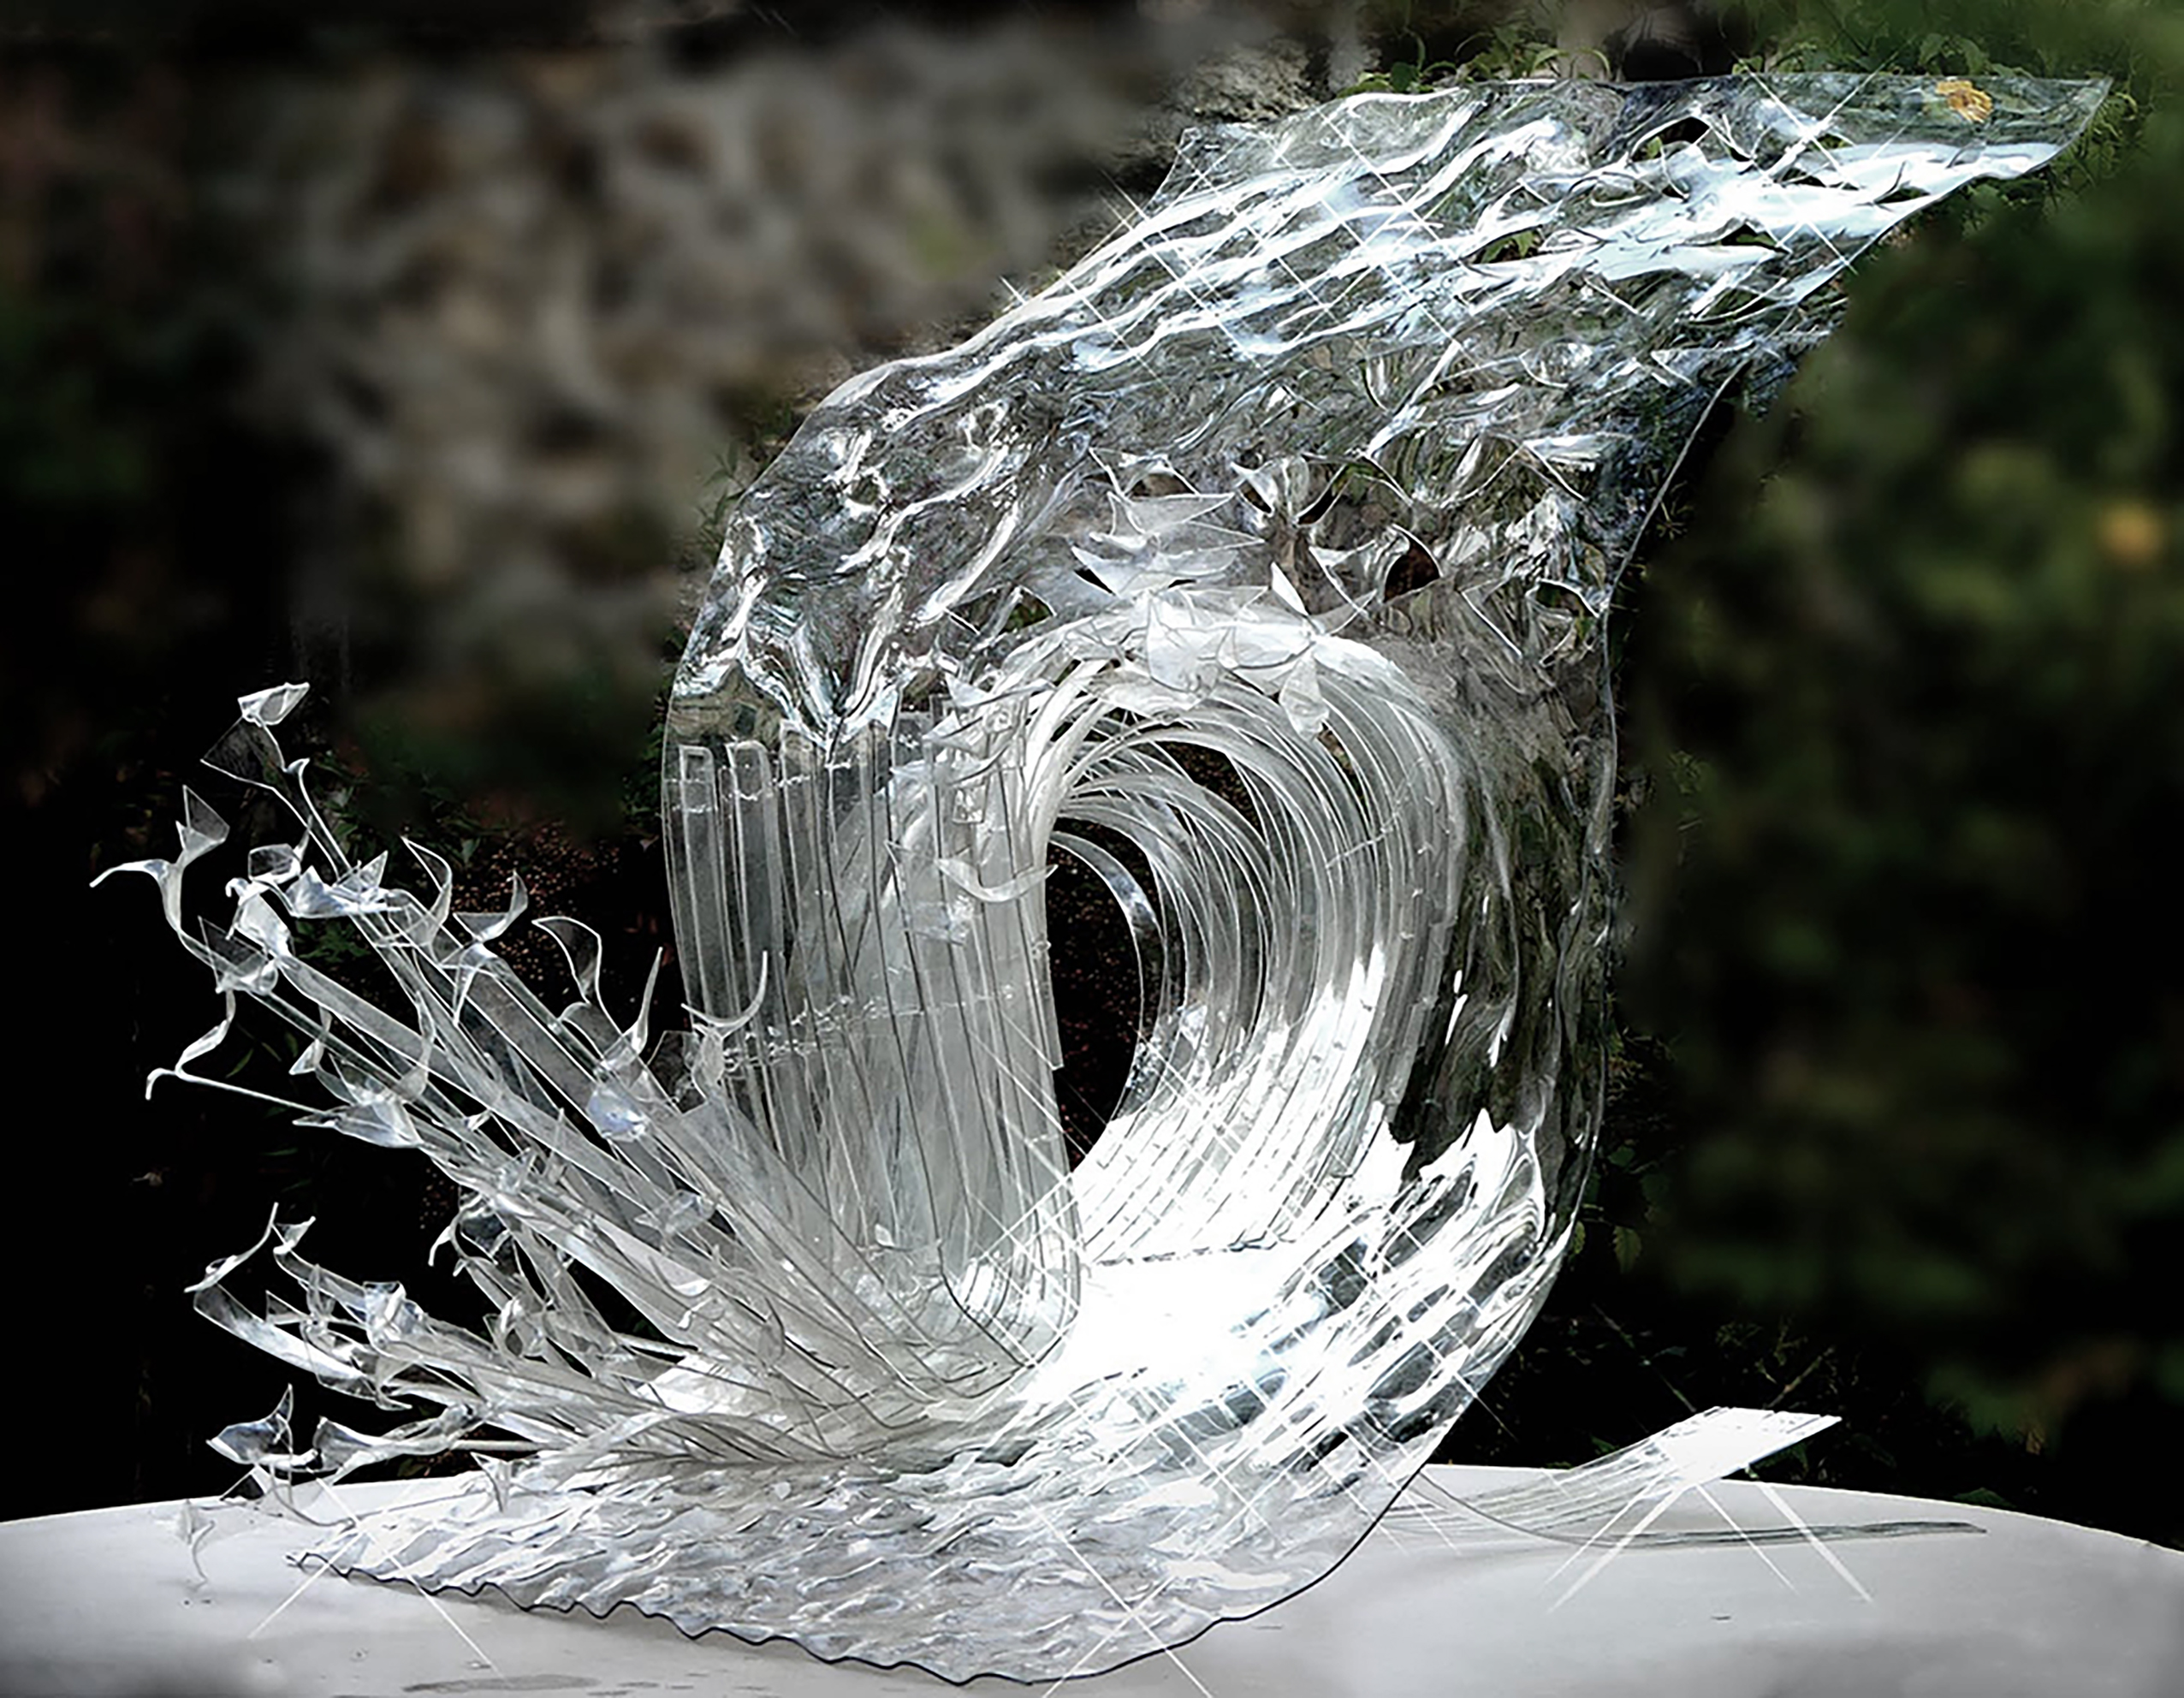 Dominique Defontaines - Art contemporain - sculpture - sculpter l'eau - Plasticien